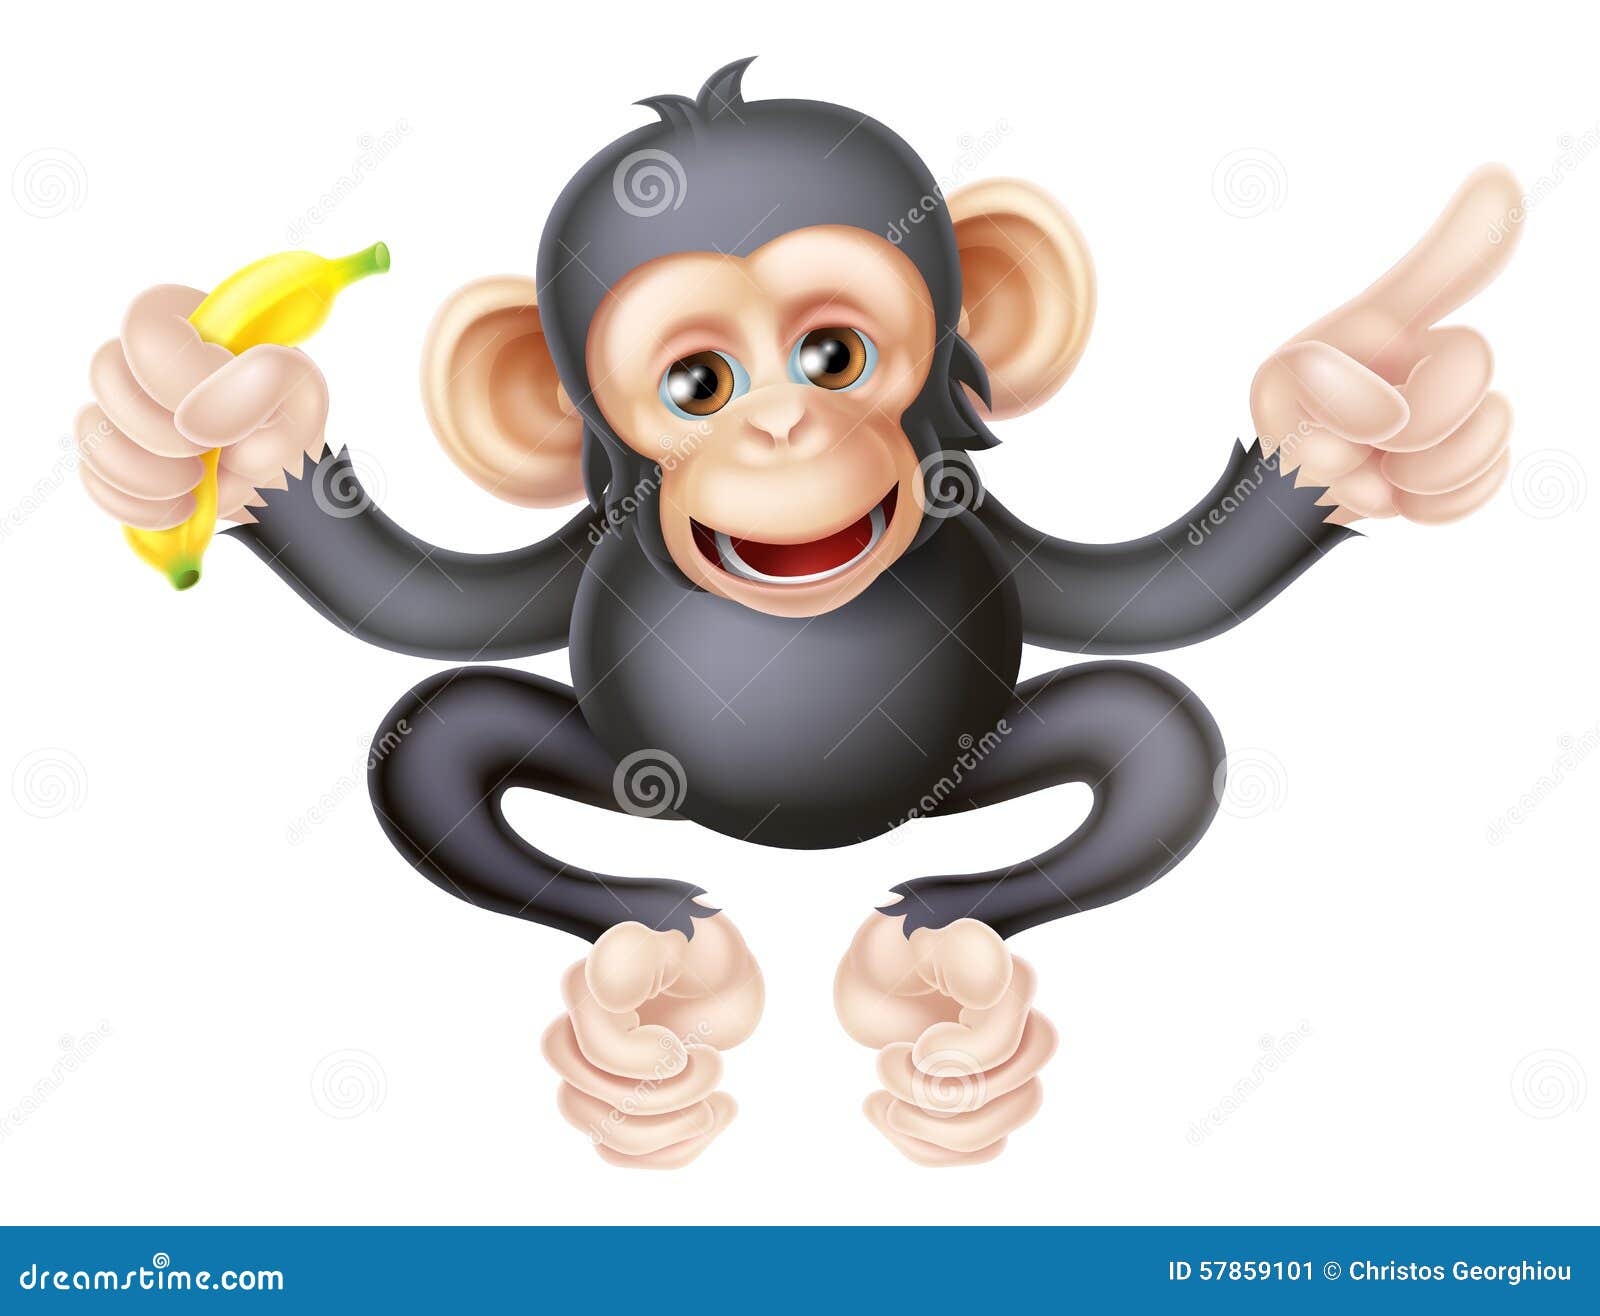 屏科大收容中心紅毛猩猩吃水果圓消暑 | 中華日報|中華新聞雲